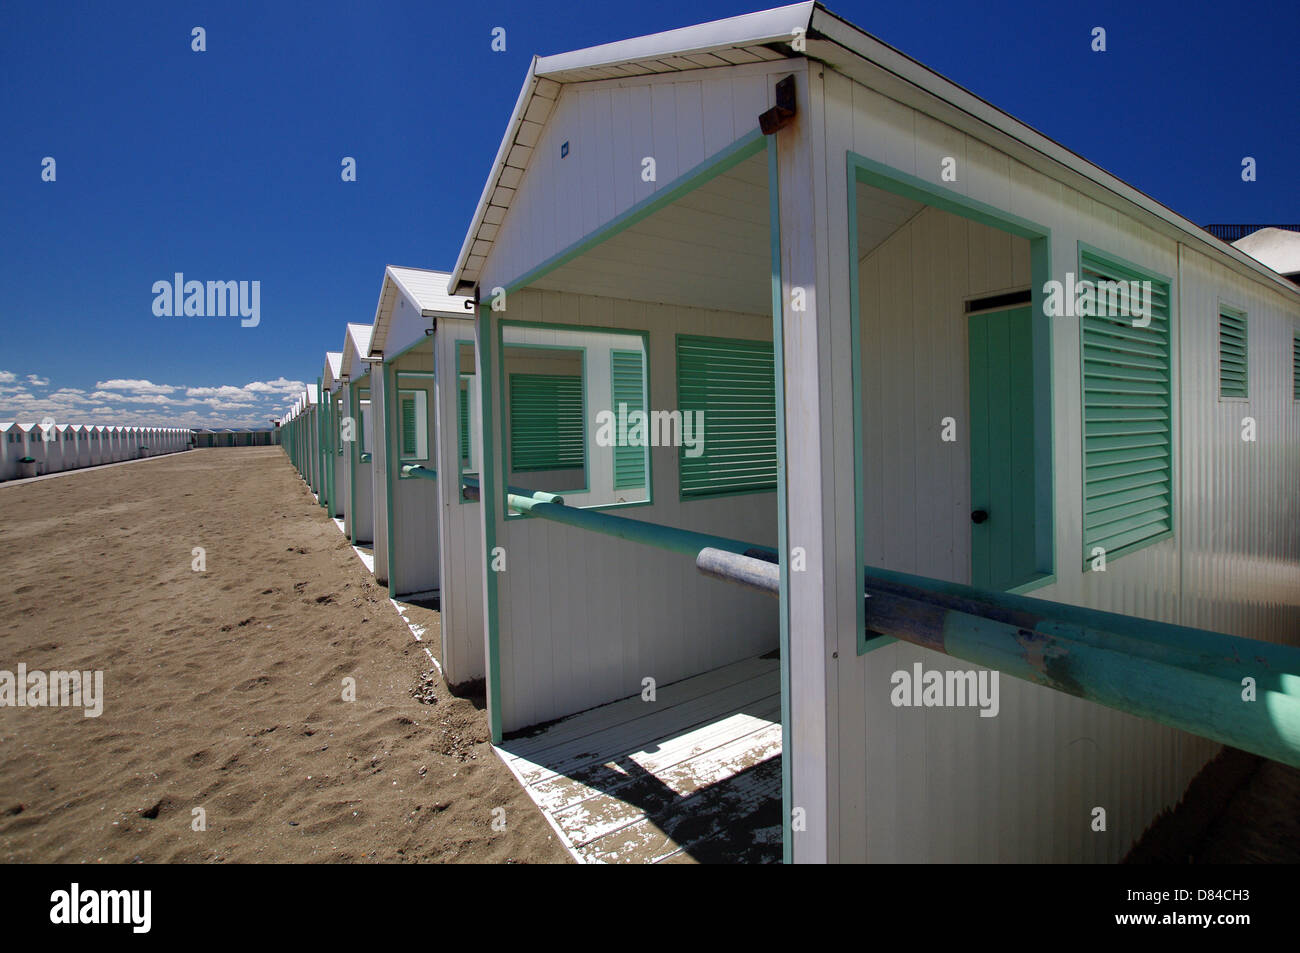 Beach huts at the Lido - Venice, Italy Stock Photo